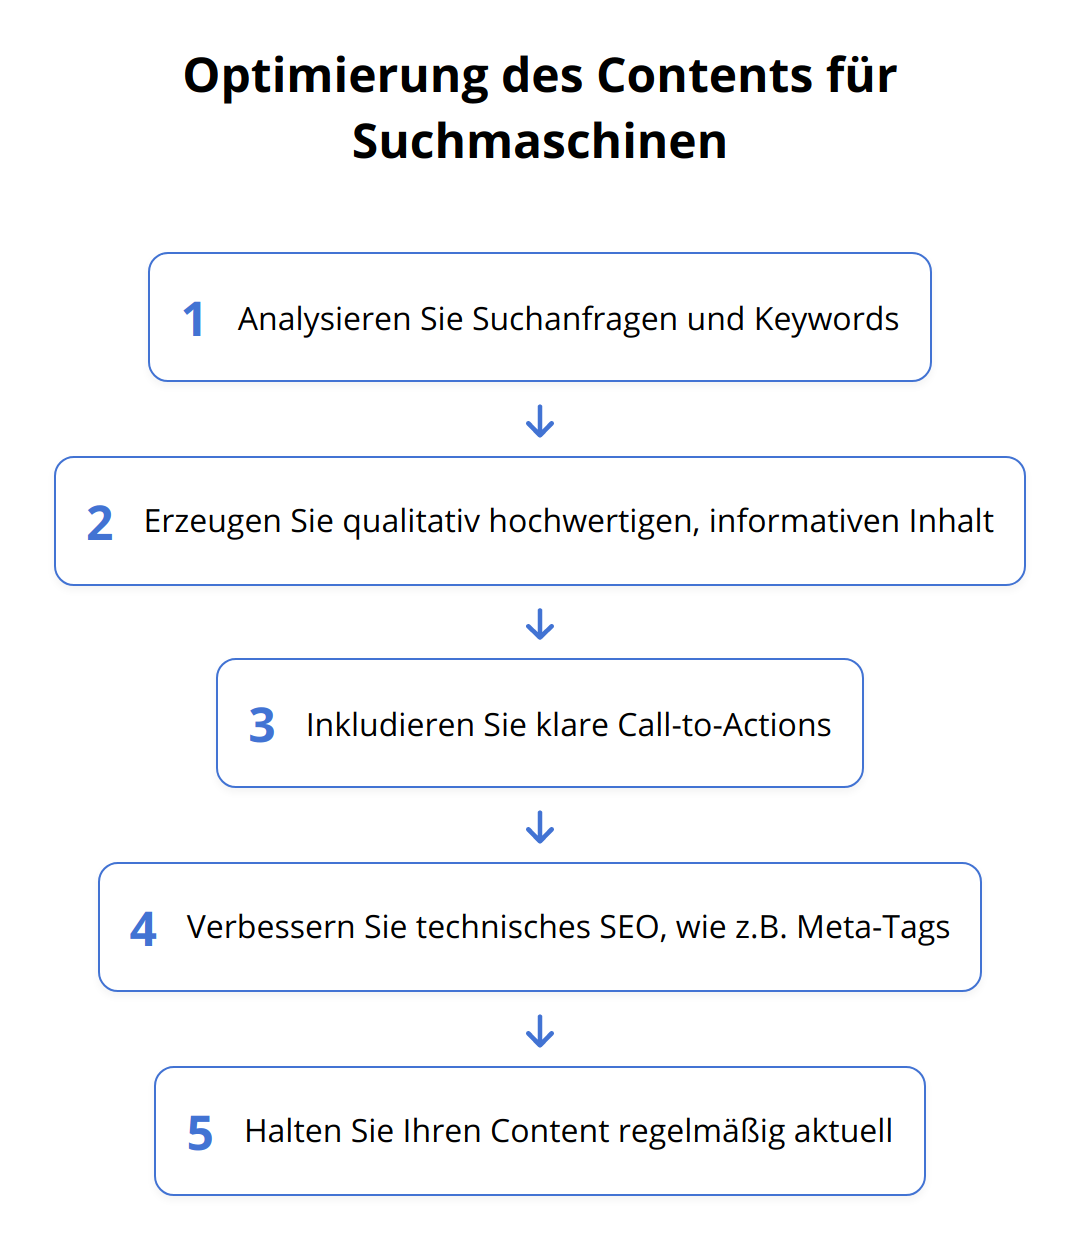 Flow Chart - Optimierung des Contents für Suchmaschinen